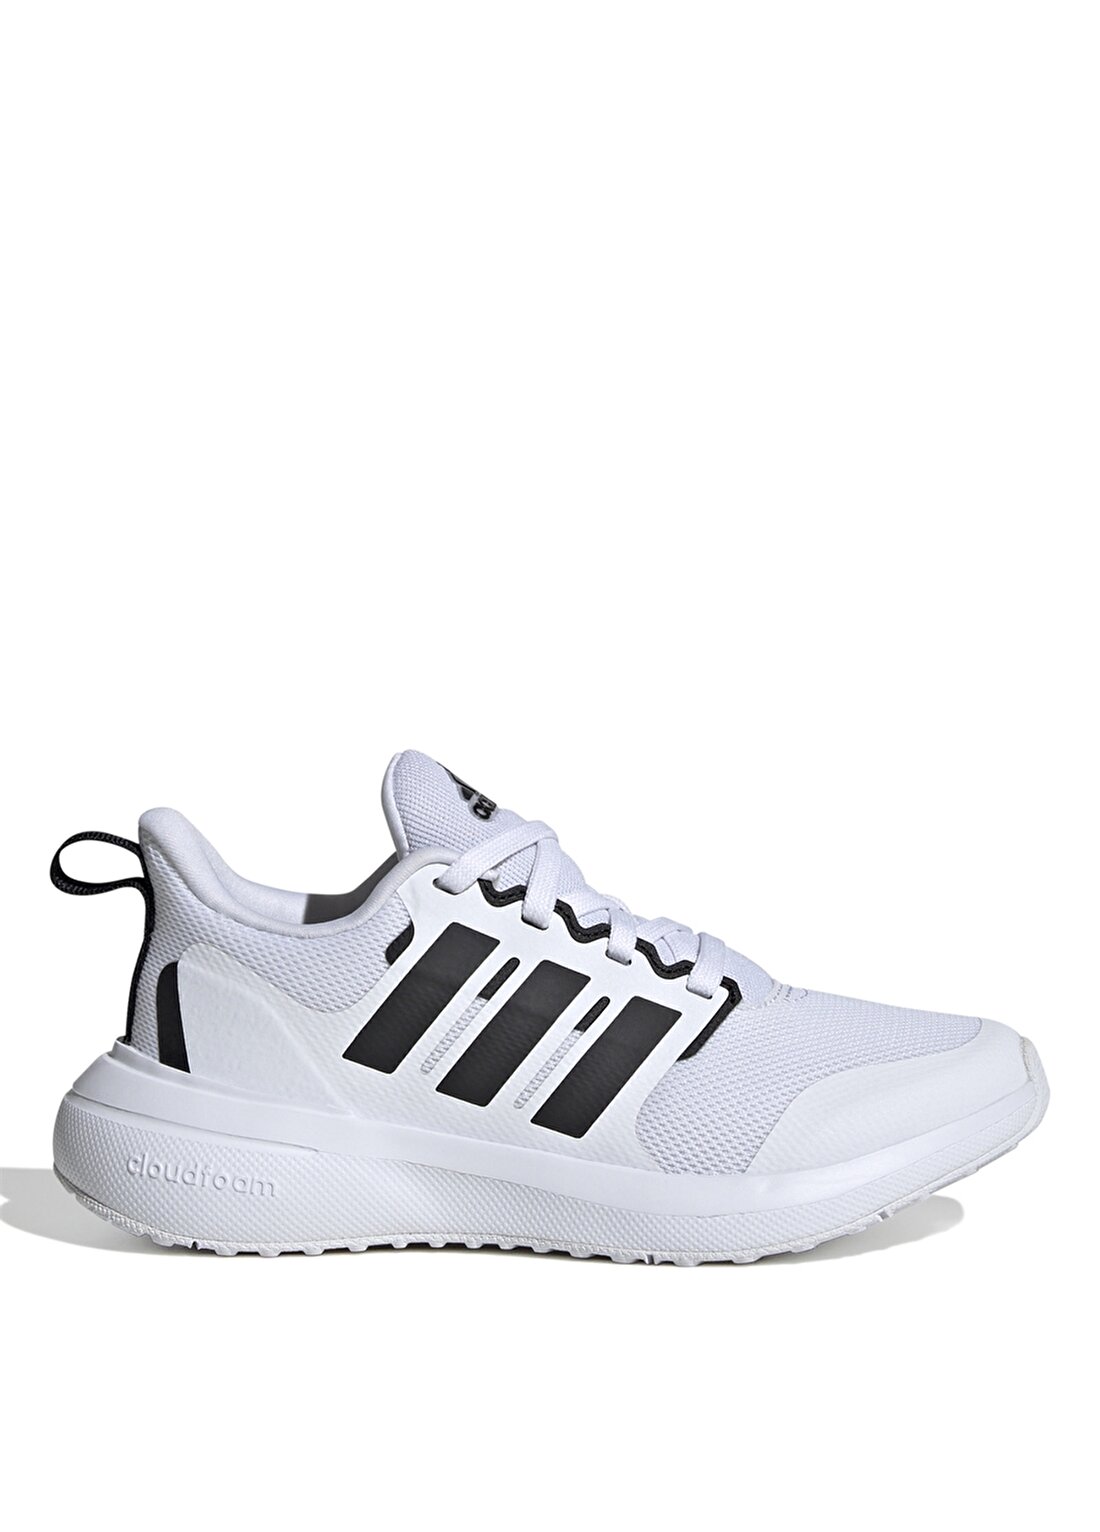 Adidas Beyaz Erkek Yürüyüş Ayakkabısı ID0588-Fortarun 2.0 K